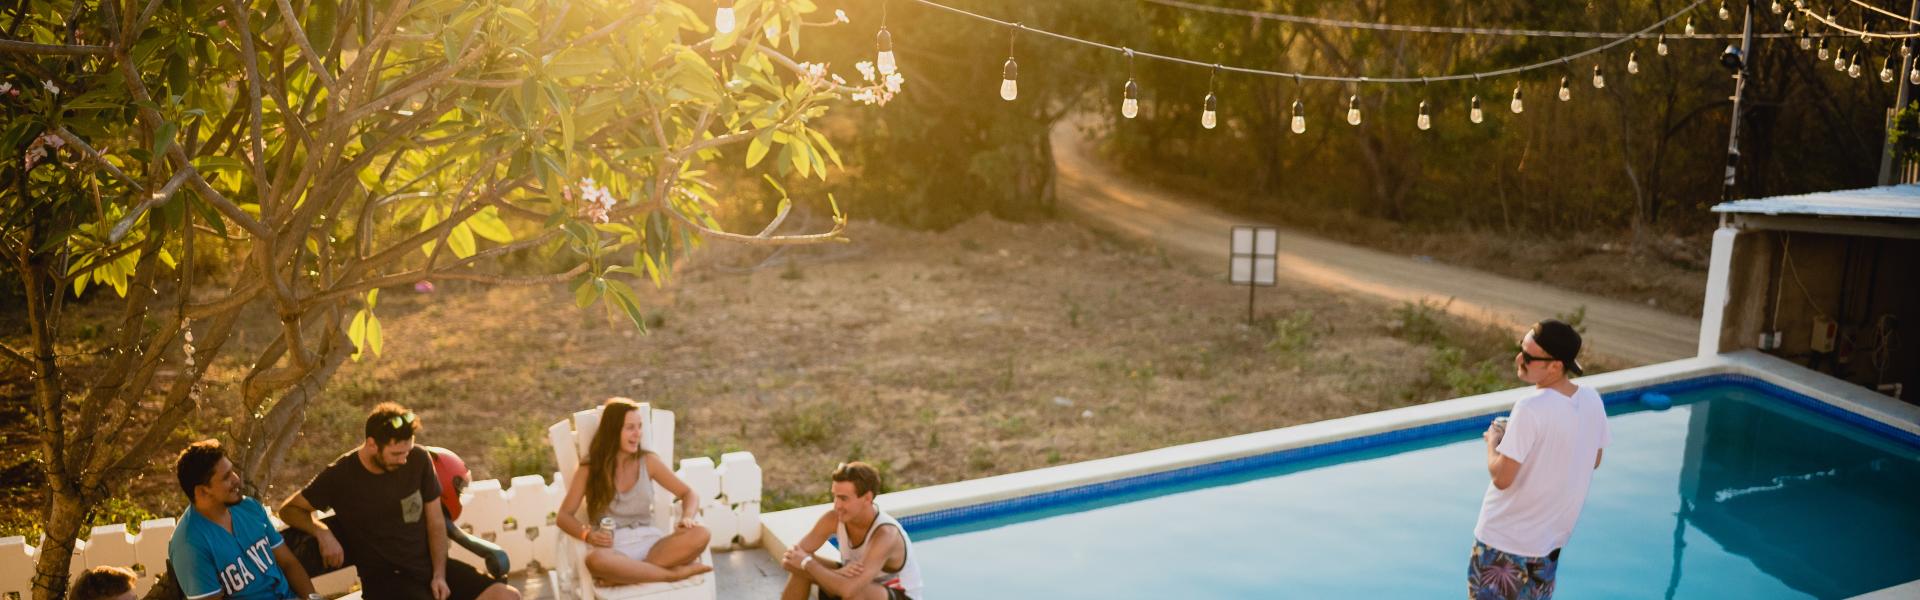 Ferienhaus mit Pool in Schweden - Casamundo